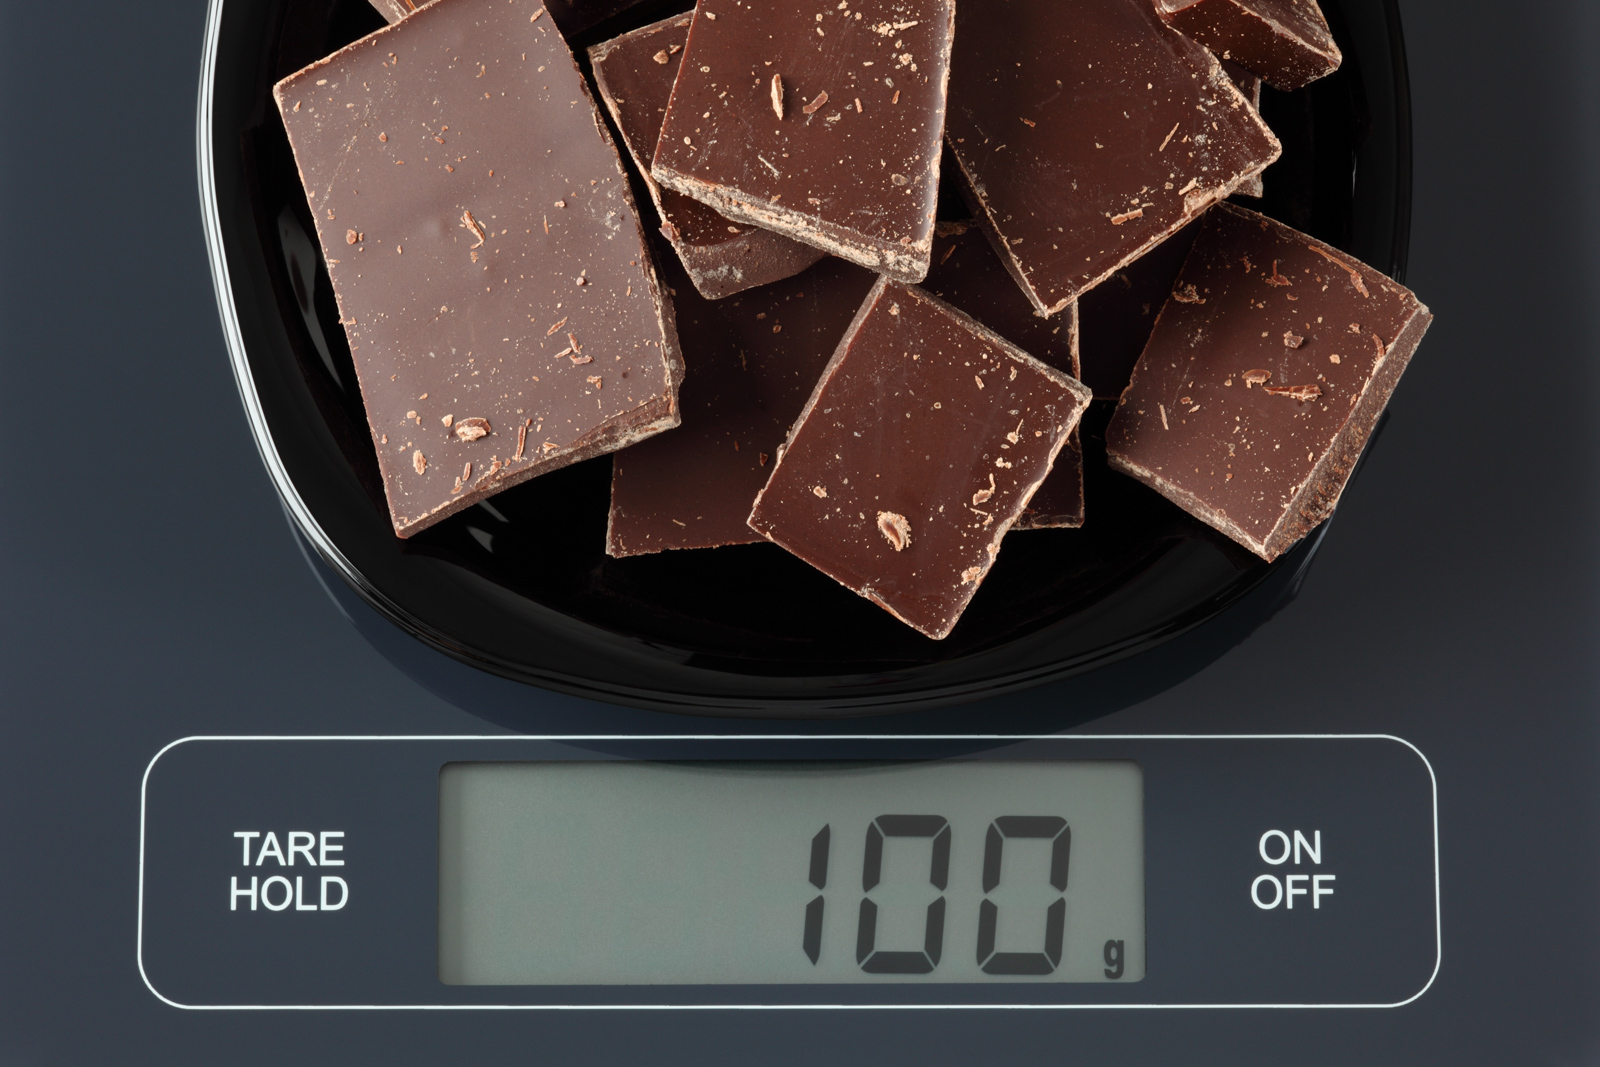 100 грамм шоколада